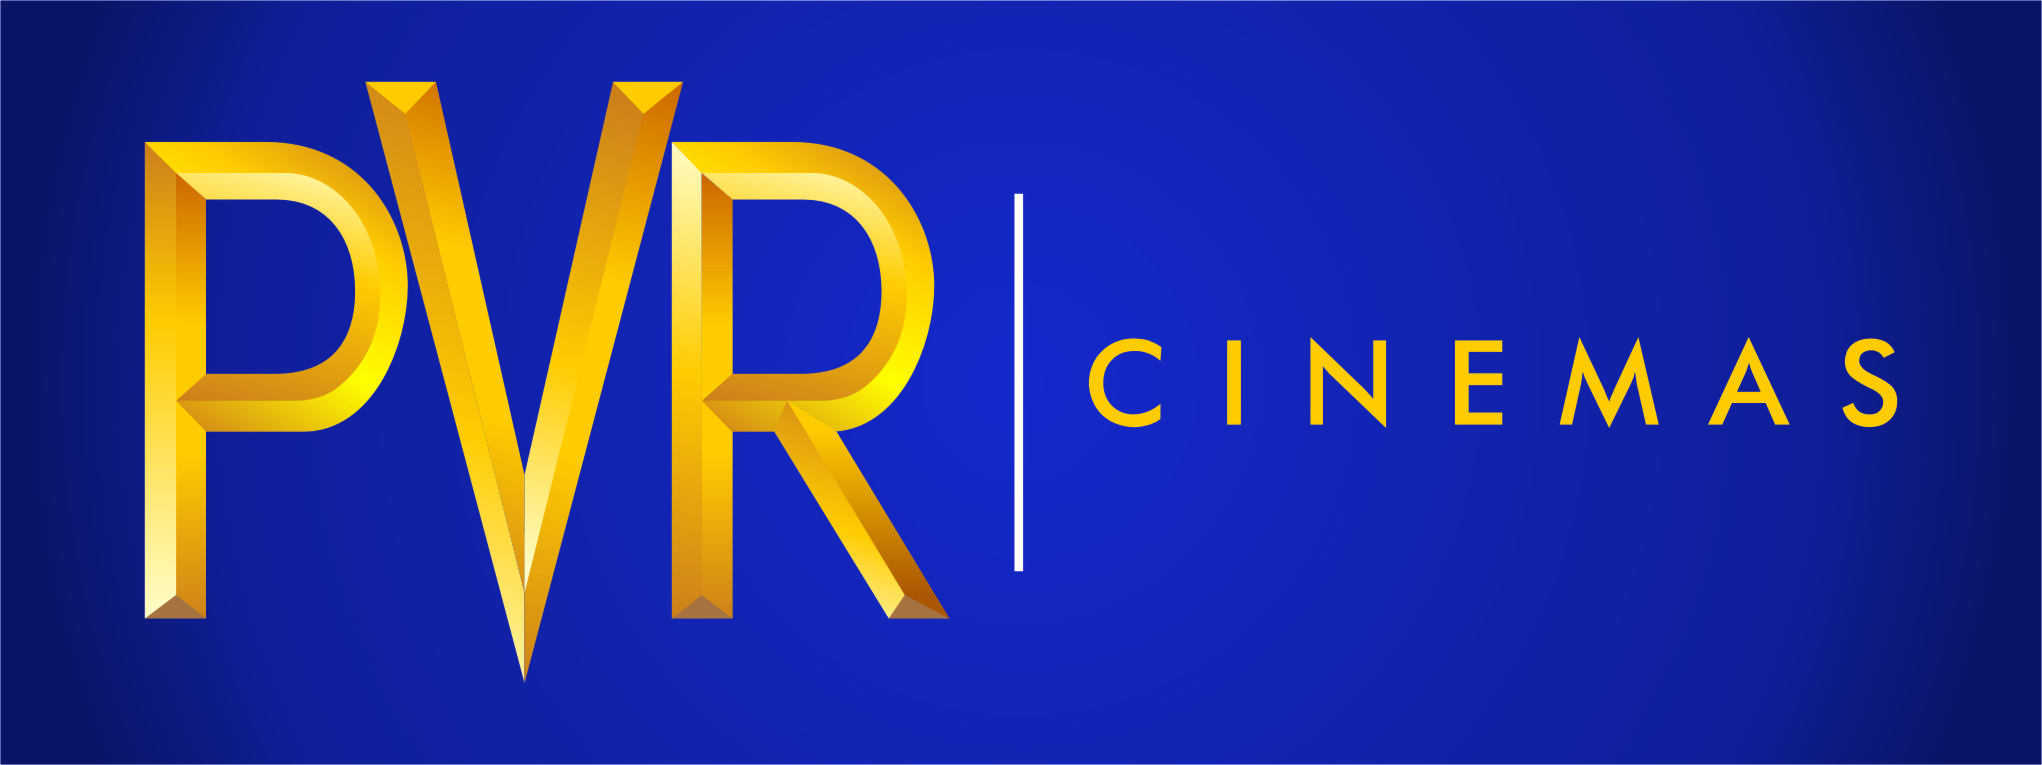 PVR-Cinema-Logo-1